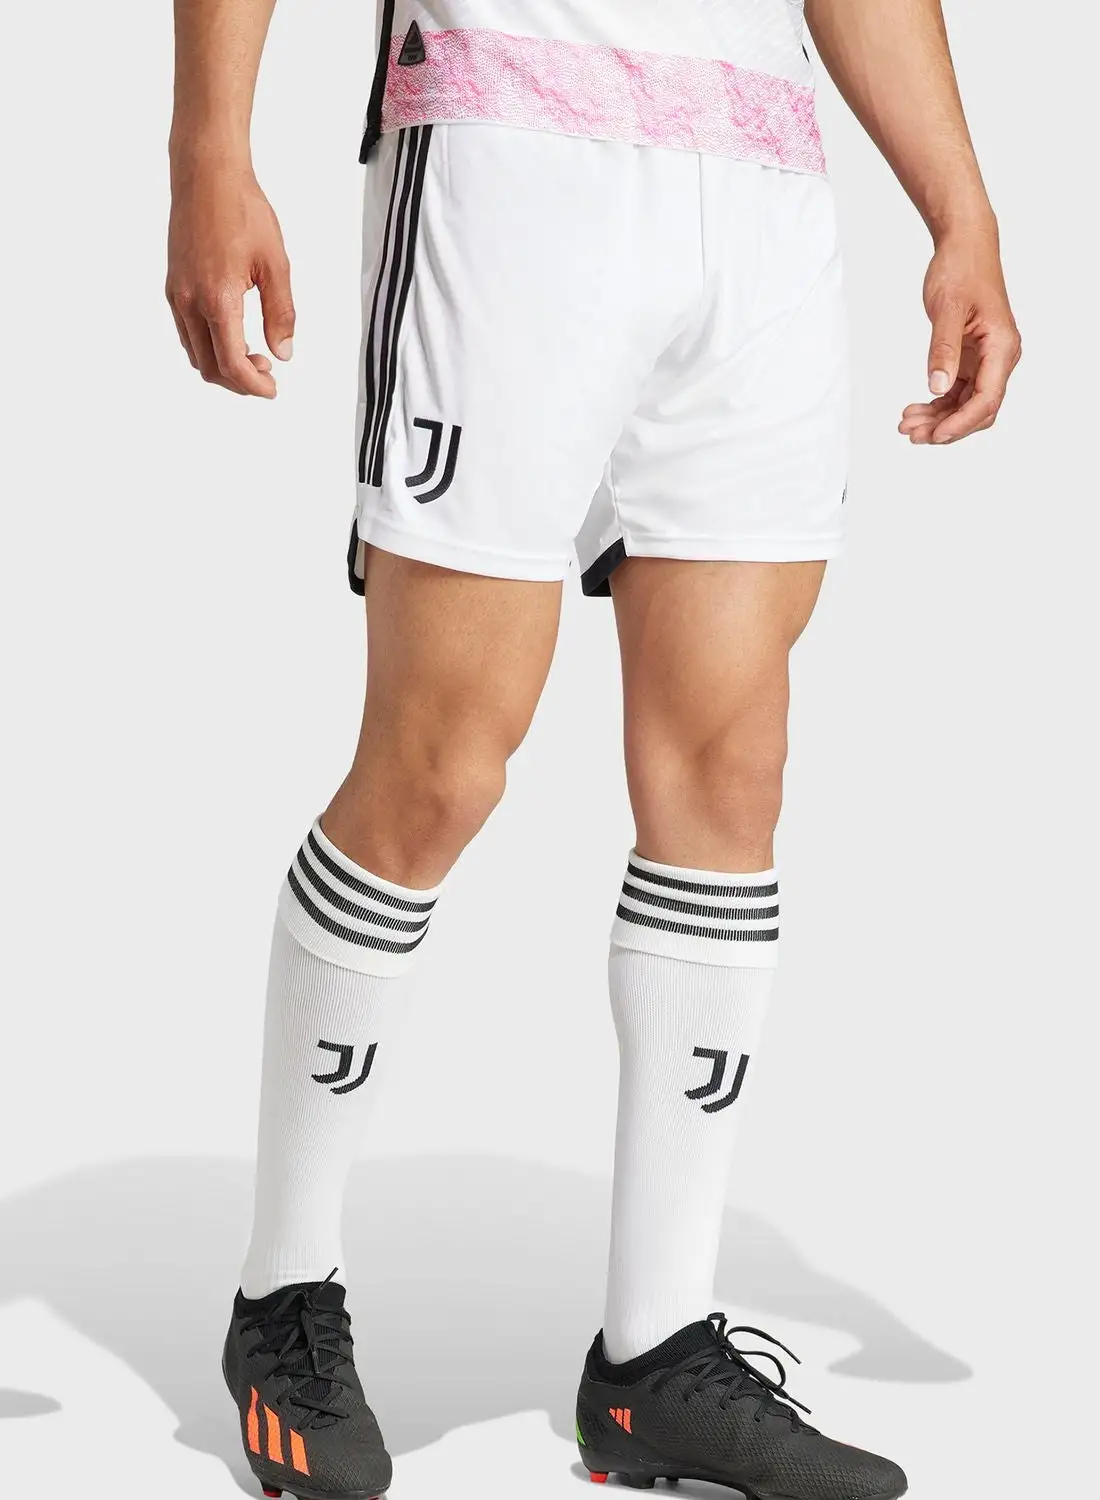 Adidas Juventus Home Shorts